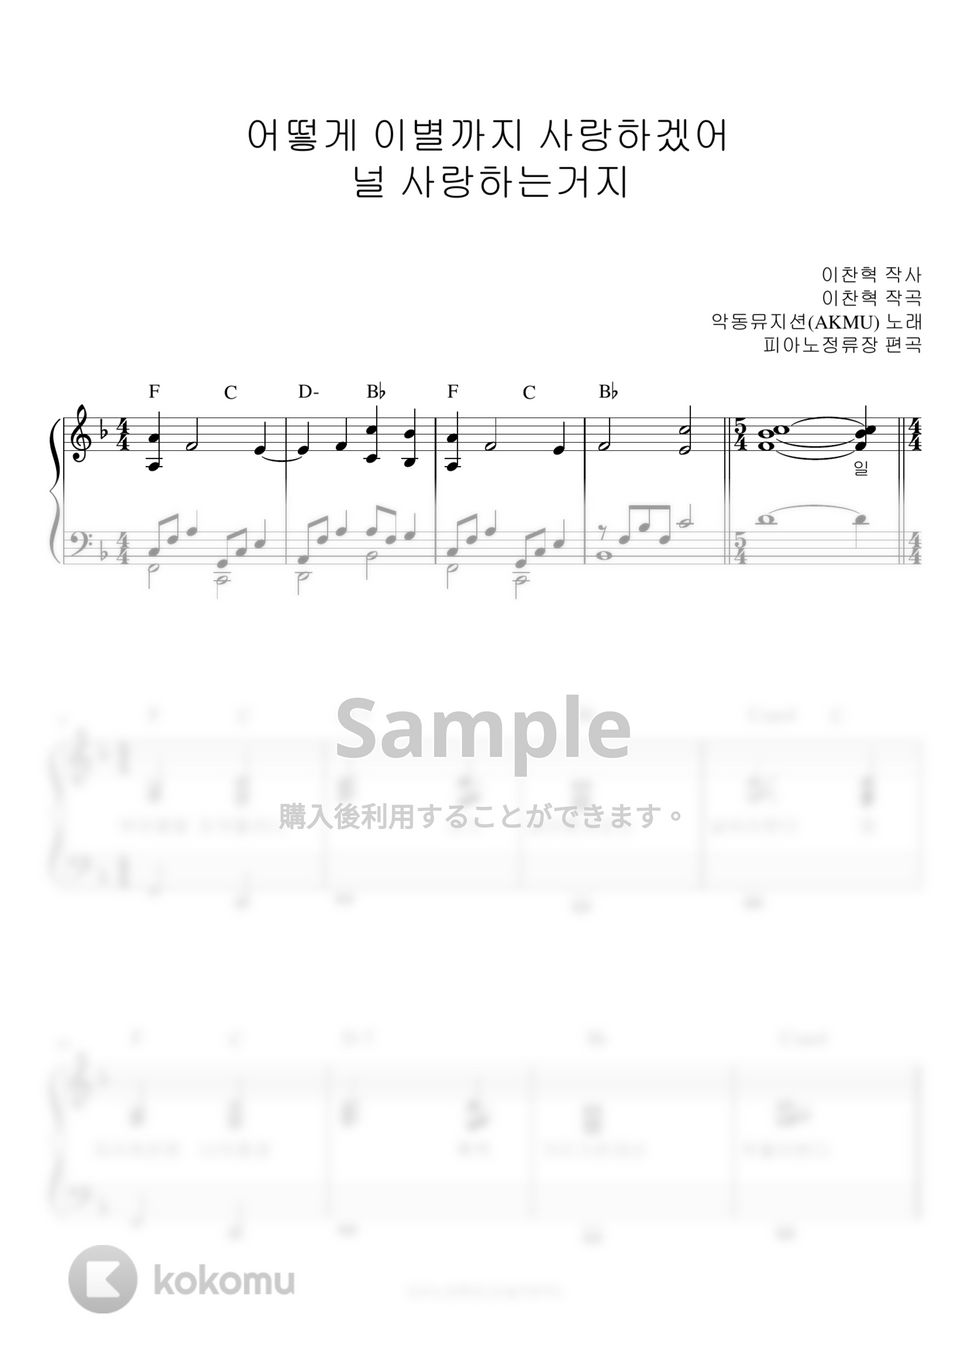 楽童ミュージシャン (AKMU) - How can I love the heartbreak, you're the one I love (伴奏楽譜) by pianojeongryujang